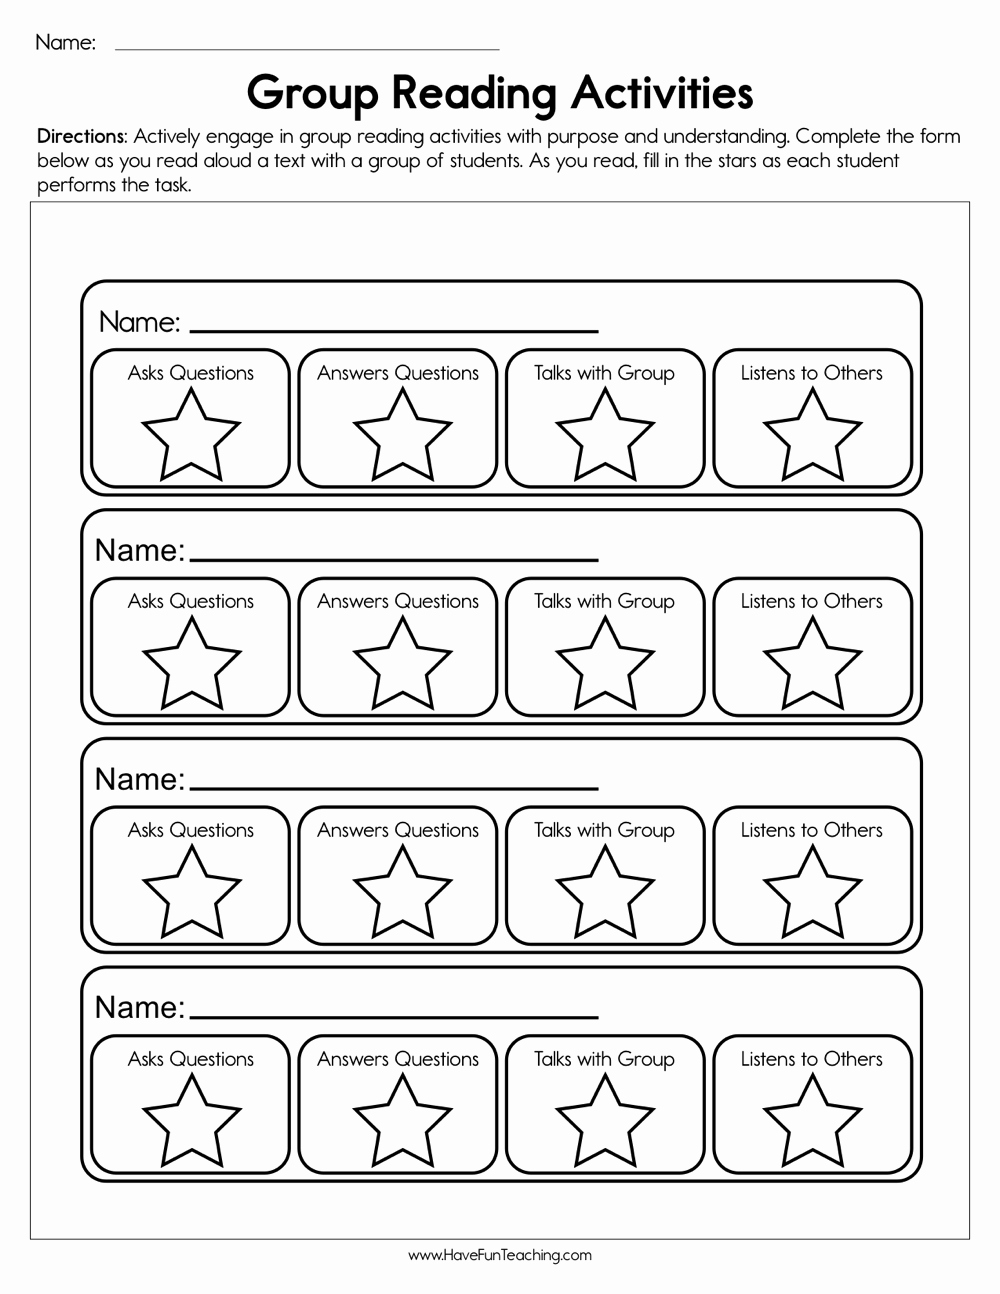 Genre Worksheets 4th Grade New Fourth Grade Genres Worksheets